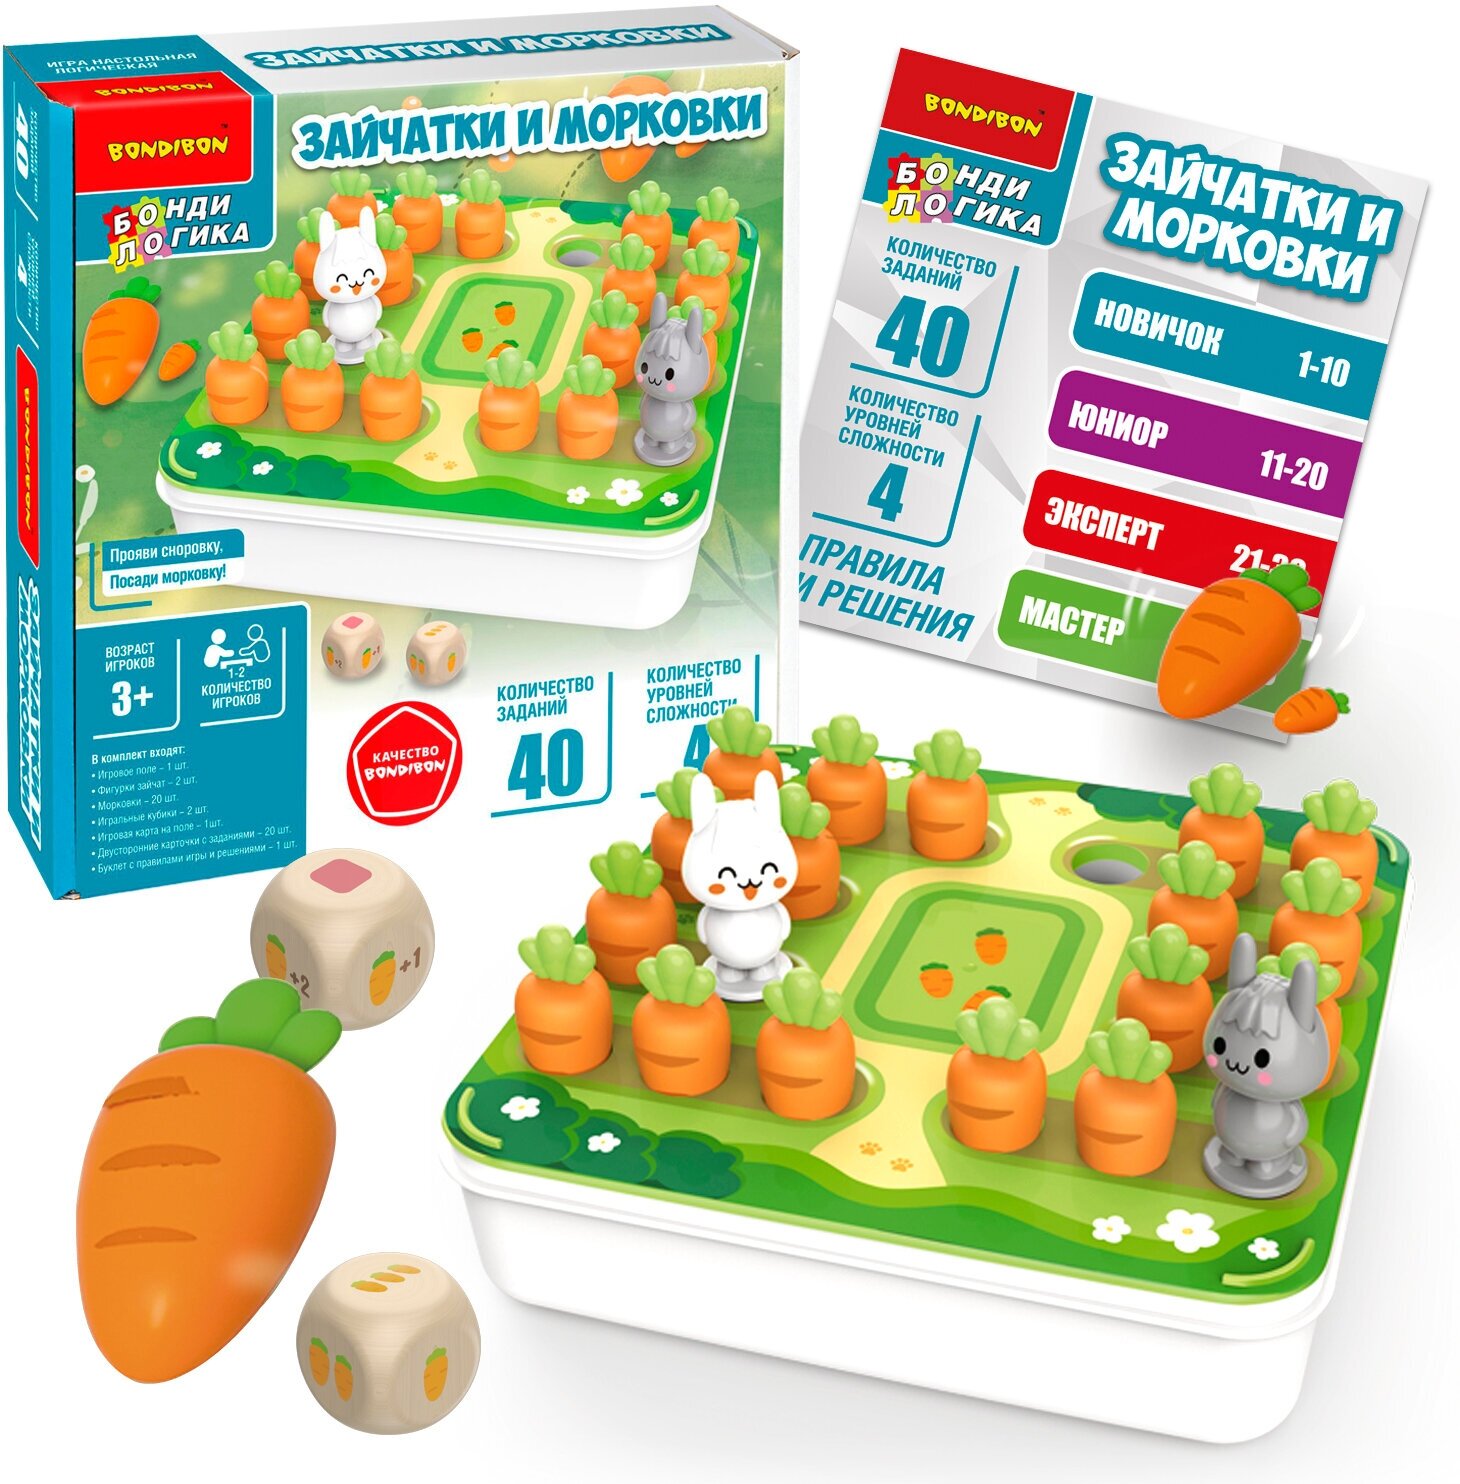 Обучающая логическая игра зайчатки И морковки БондиЛогика Bondibon развивающая игрушка для детей, учимся считать